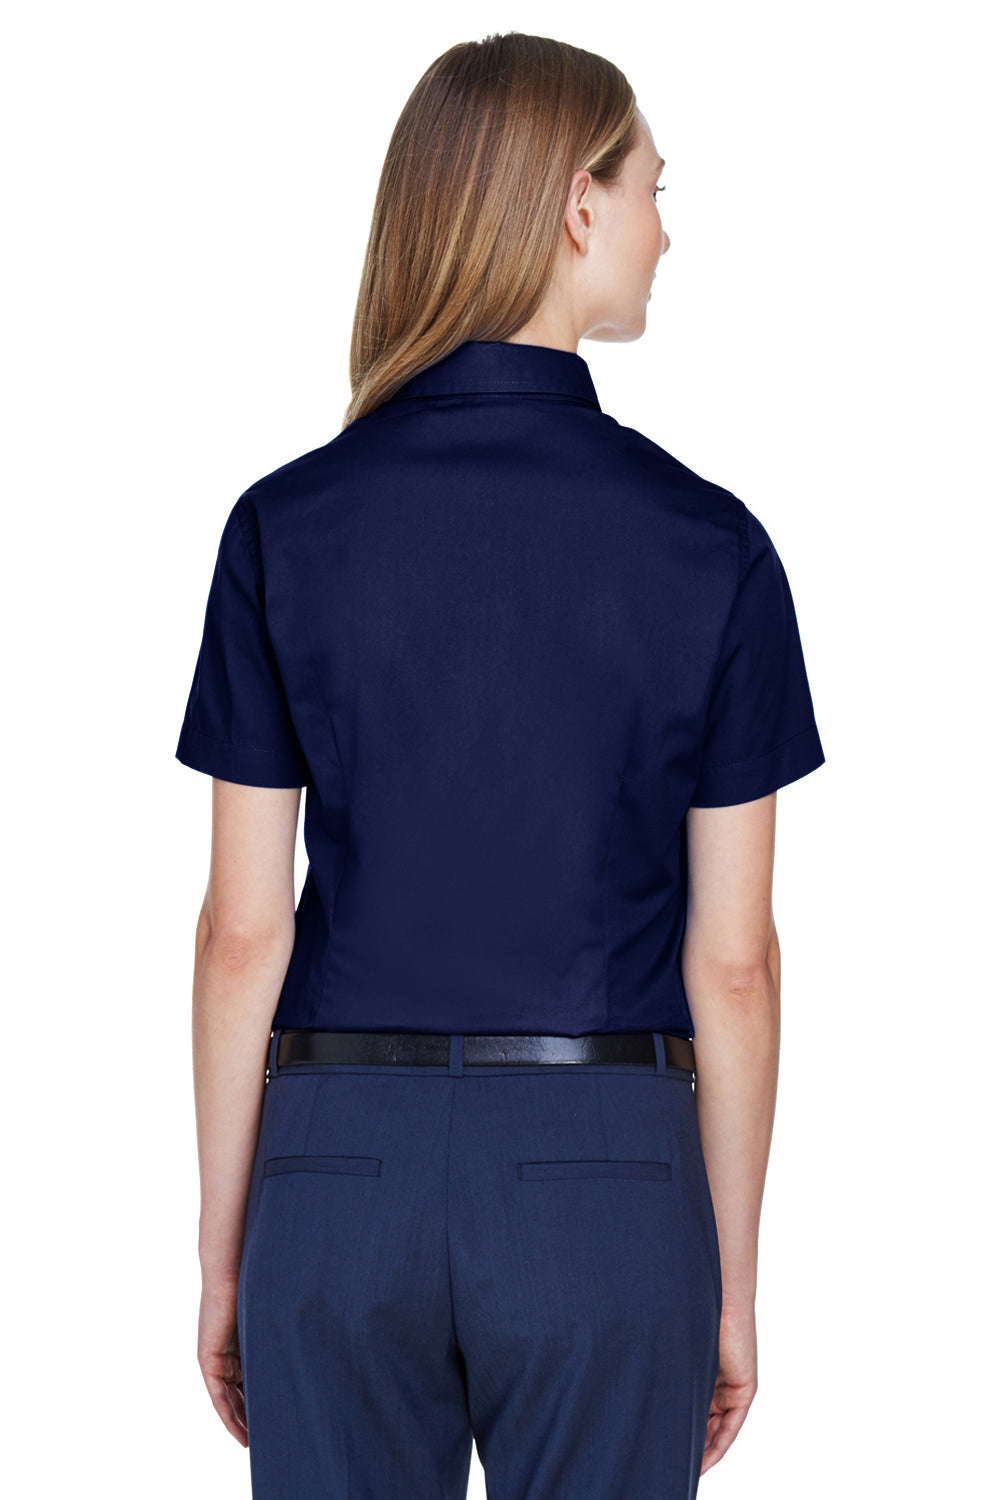 Core 365 78194 Womens Optimum Short Sleeve Button Down Shirt Navy Blue Back